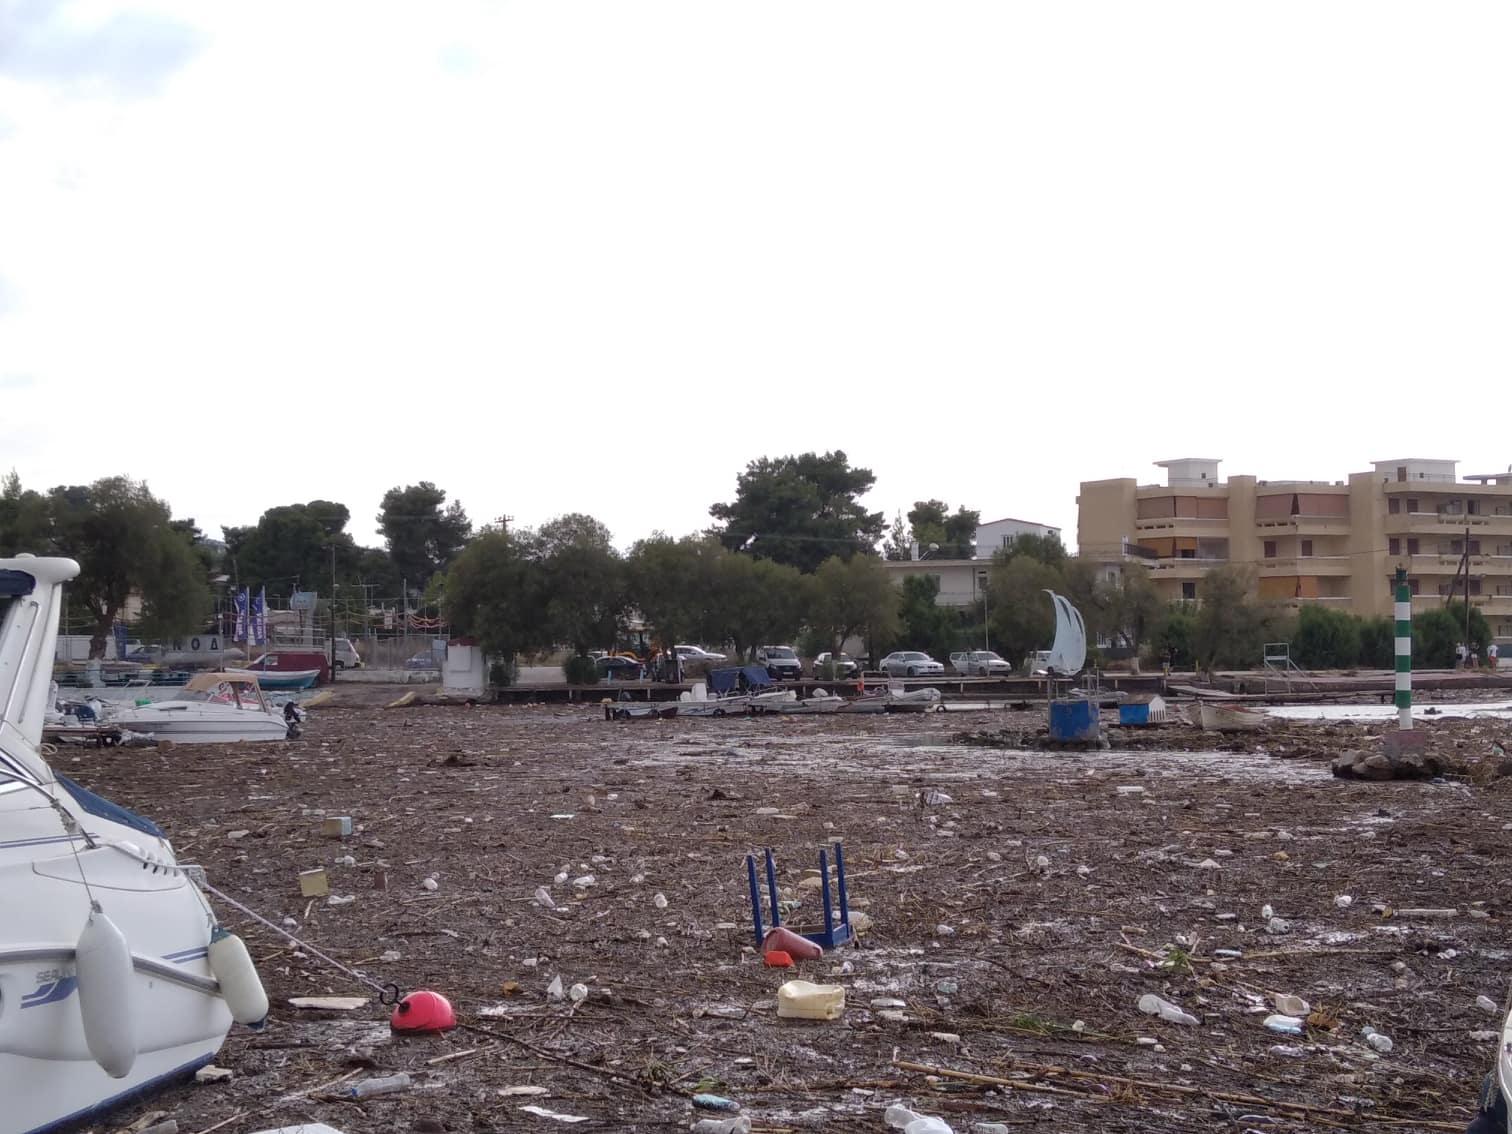 Εικόνες από τσουνάμι σε Χαλκούτσι & Δήλεσι: Ξεβράστηκαν ζώα και σκουπίδια – Αυτοψία του pronews.gr (φωτό-βίντεο)